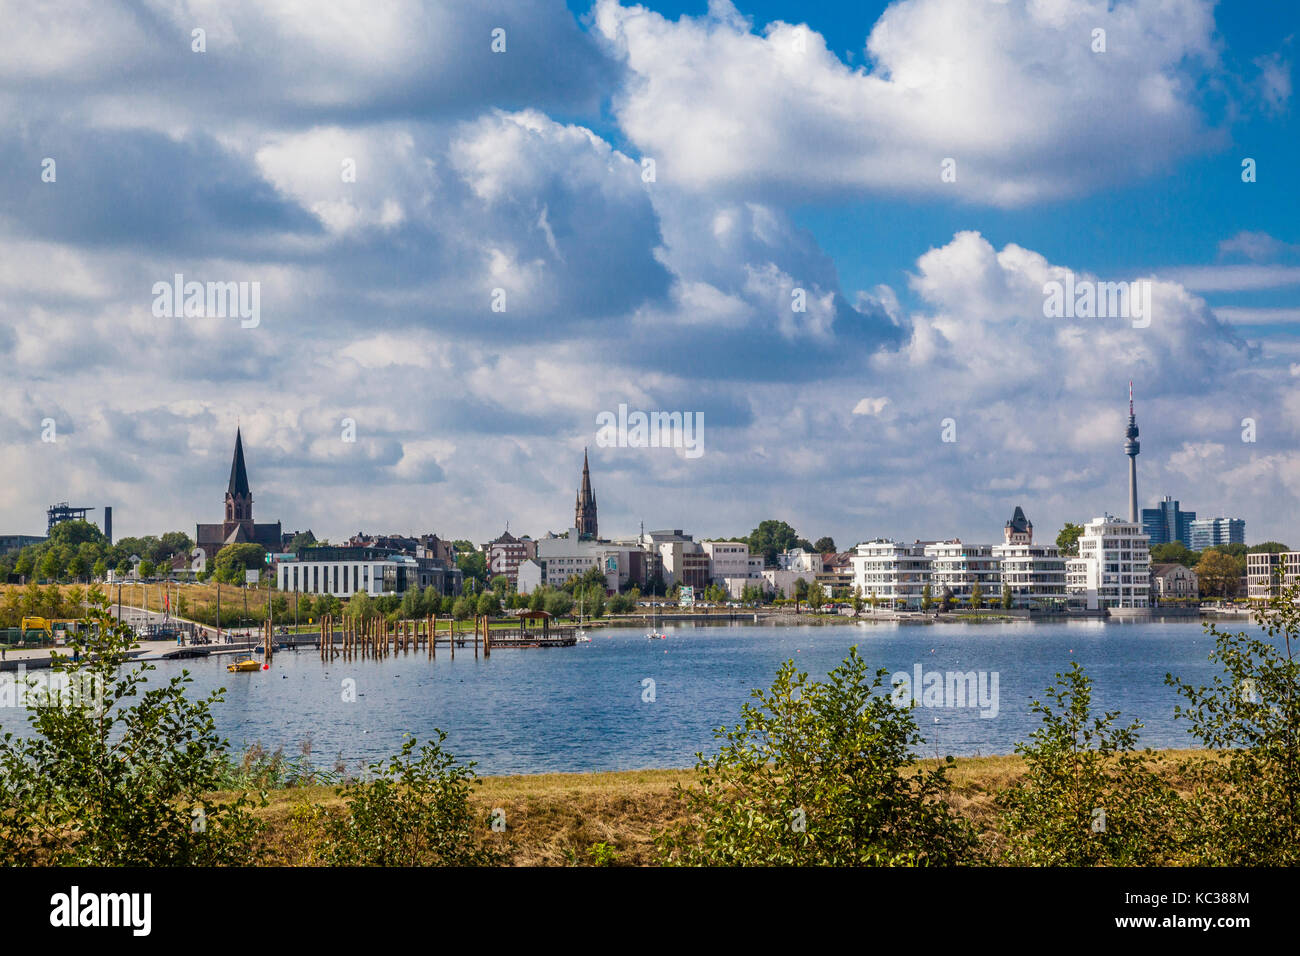 In Germania, in Renania settentrionale-Vestfalia, Dortmund-Hörde, vista i Phonix lago, una nuova area ricreativa, riqualificazione urbana sul sito di un ex furna blast Foto Stock